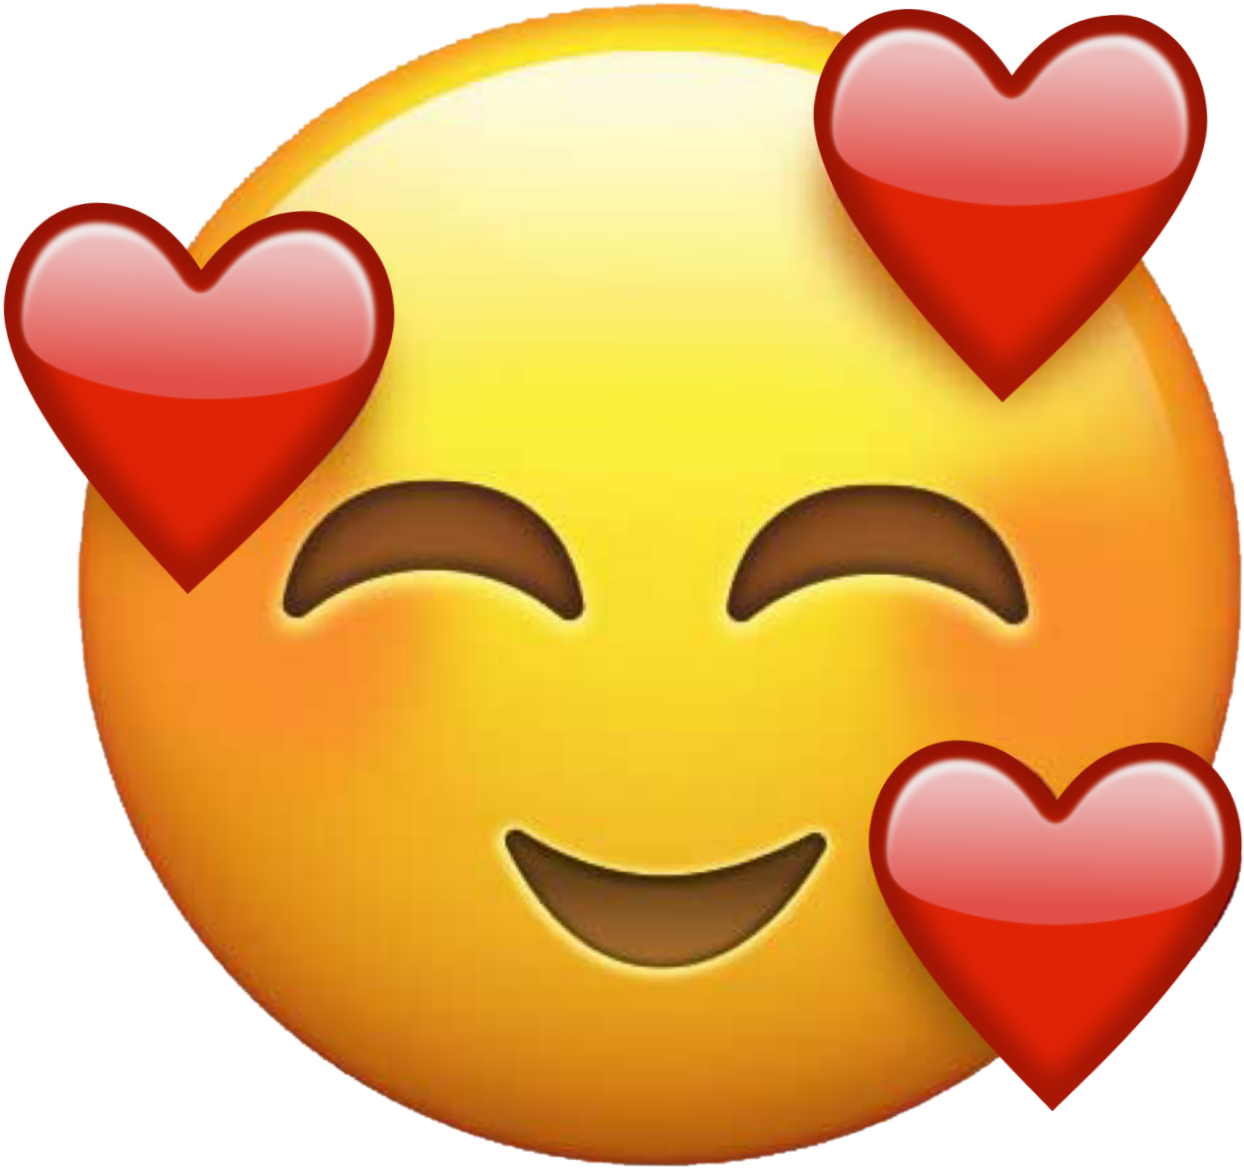 Immagine di PNG del cuore emoji di Twitter